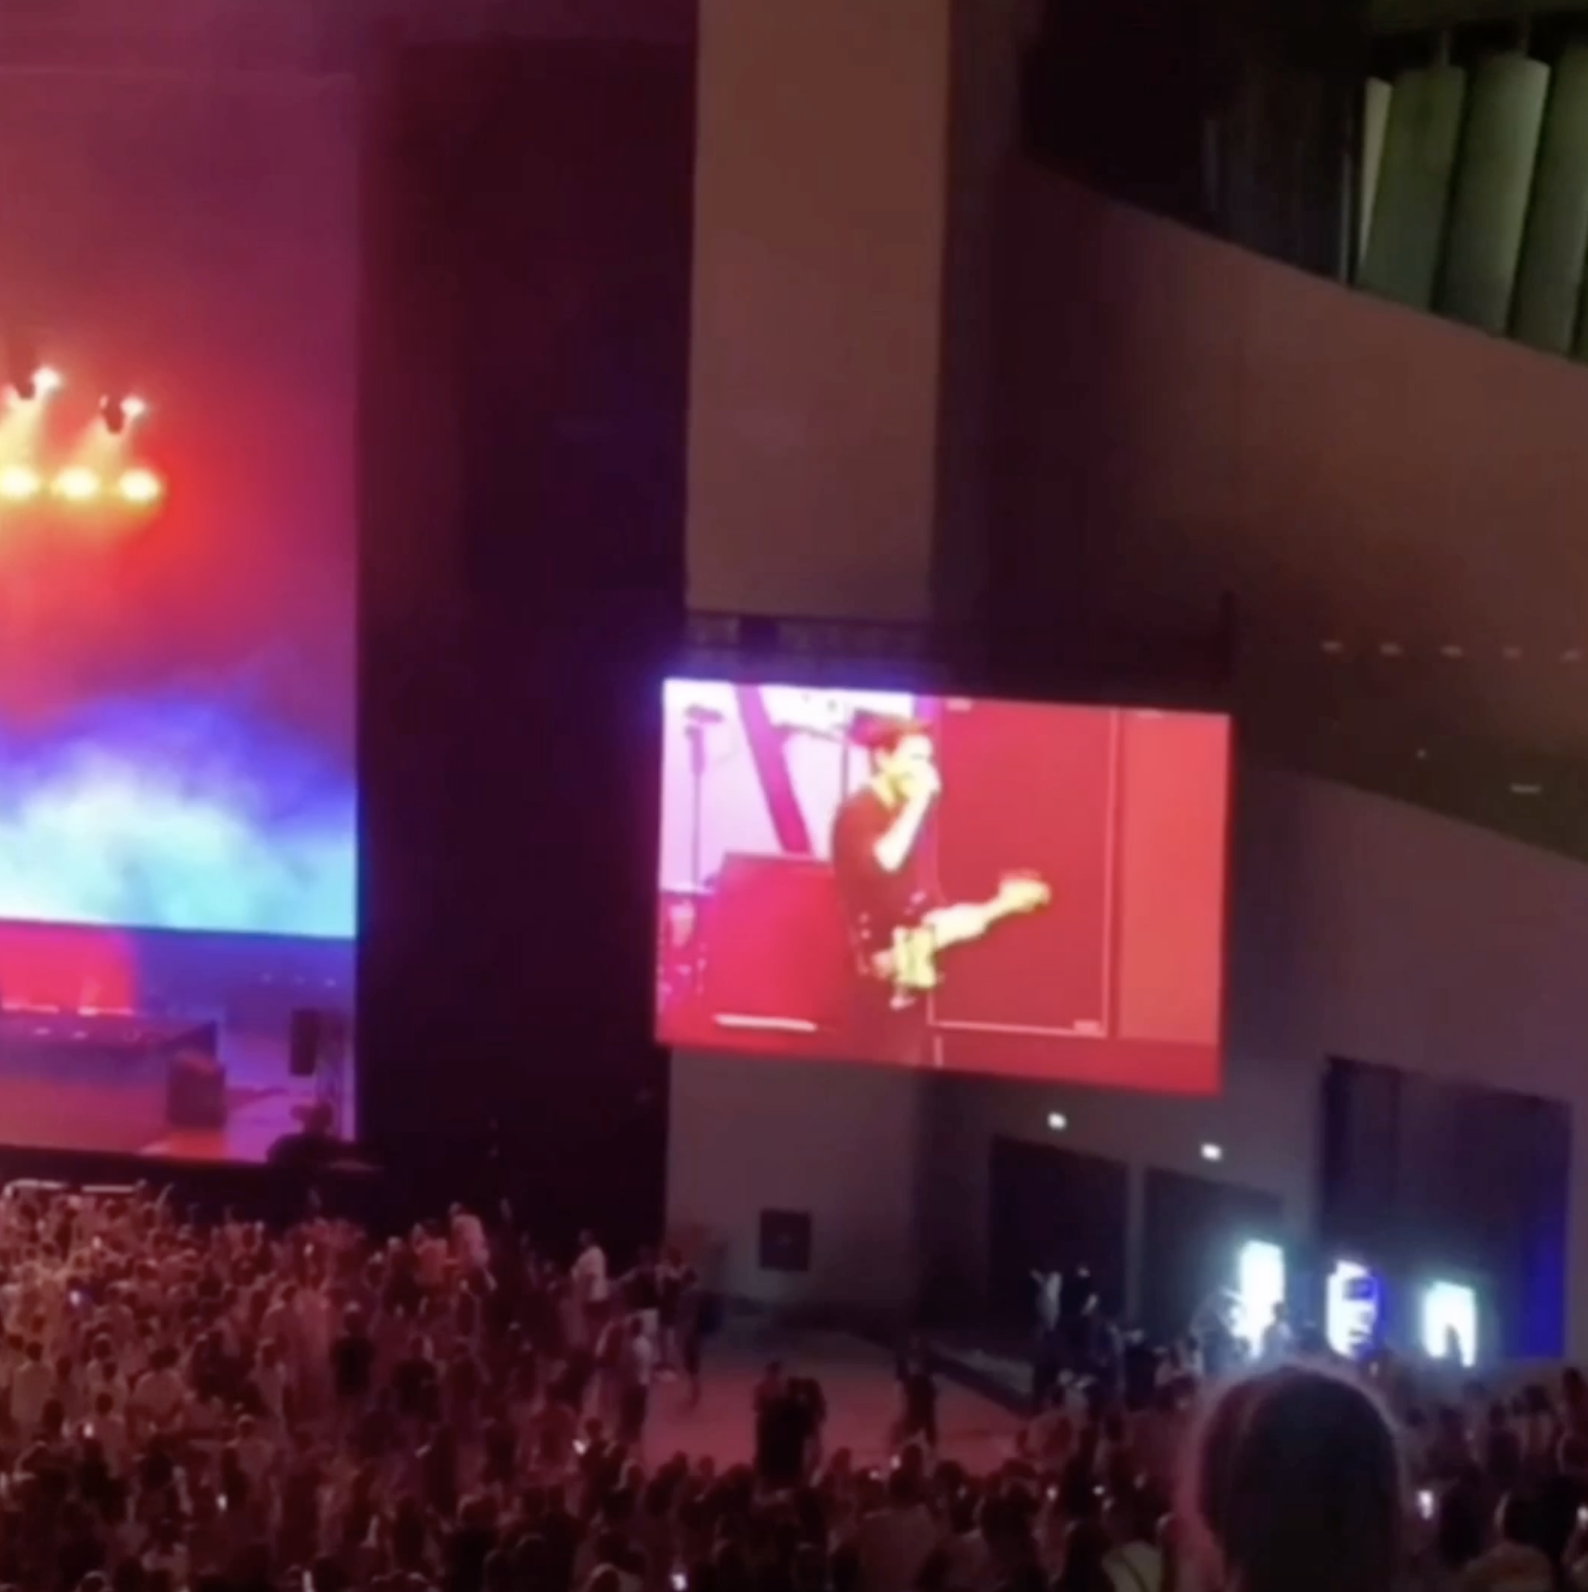 Освистали и покинули зал: в Грузии зрители сорвали концерт группы The Killers из-за российского барабанщика на сцене. Видео